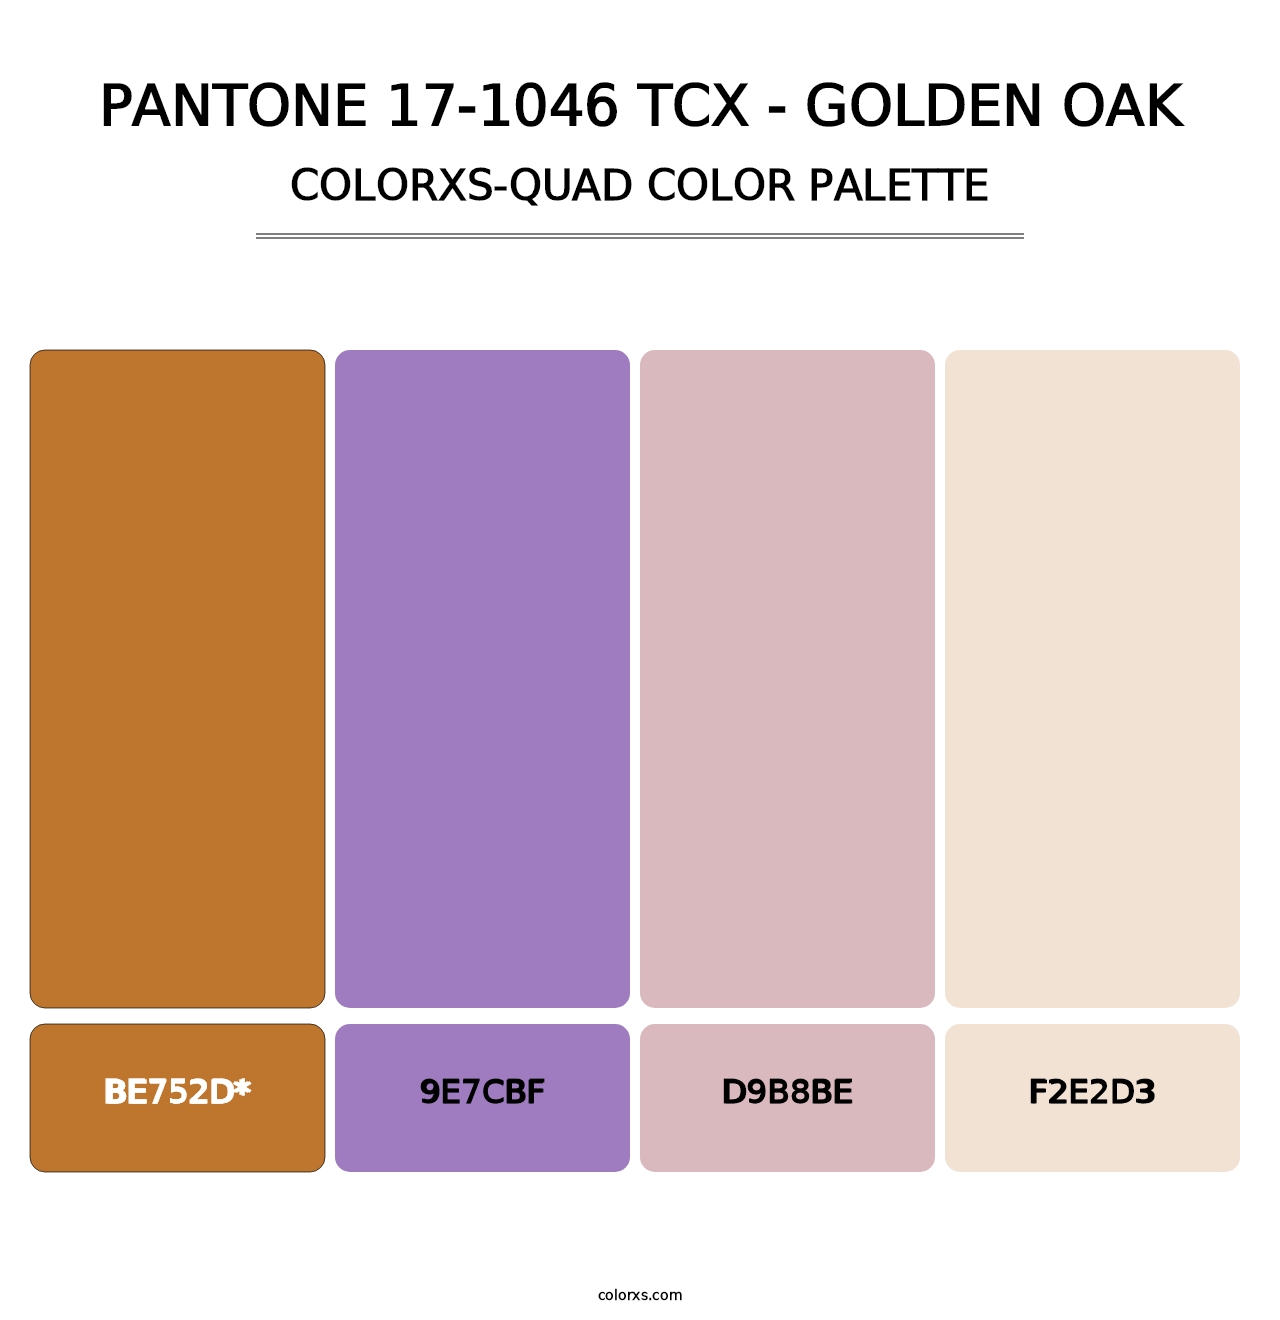 PANTONE 17-1046 TCX - Golden Oak - Colorxs Quad Palette